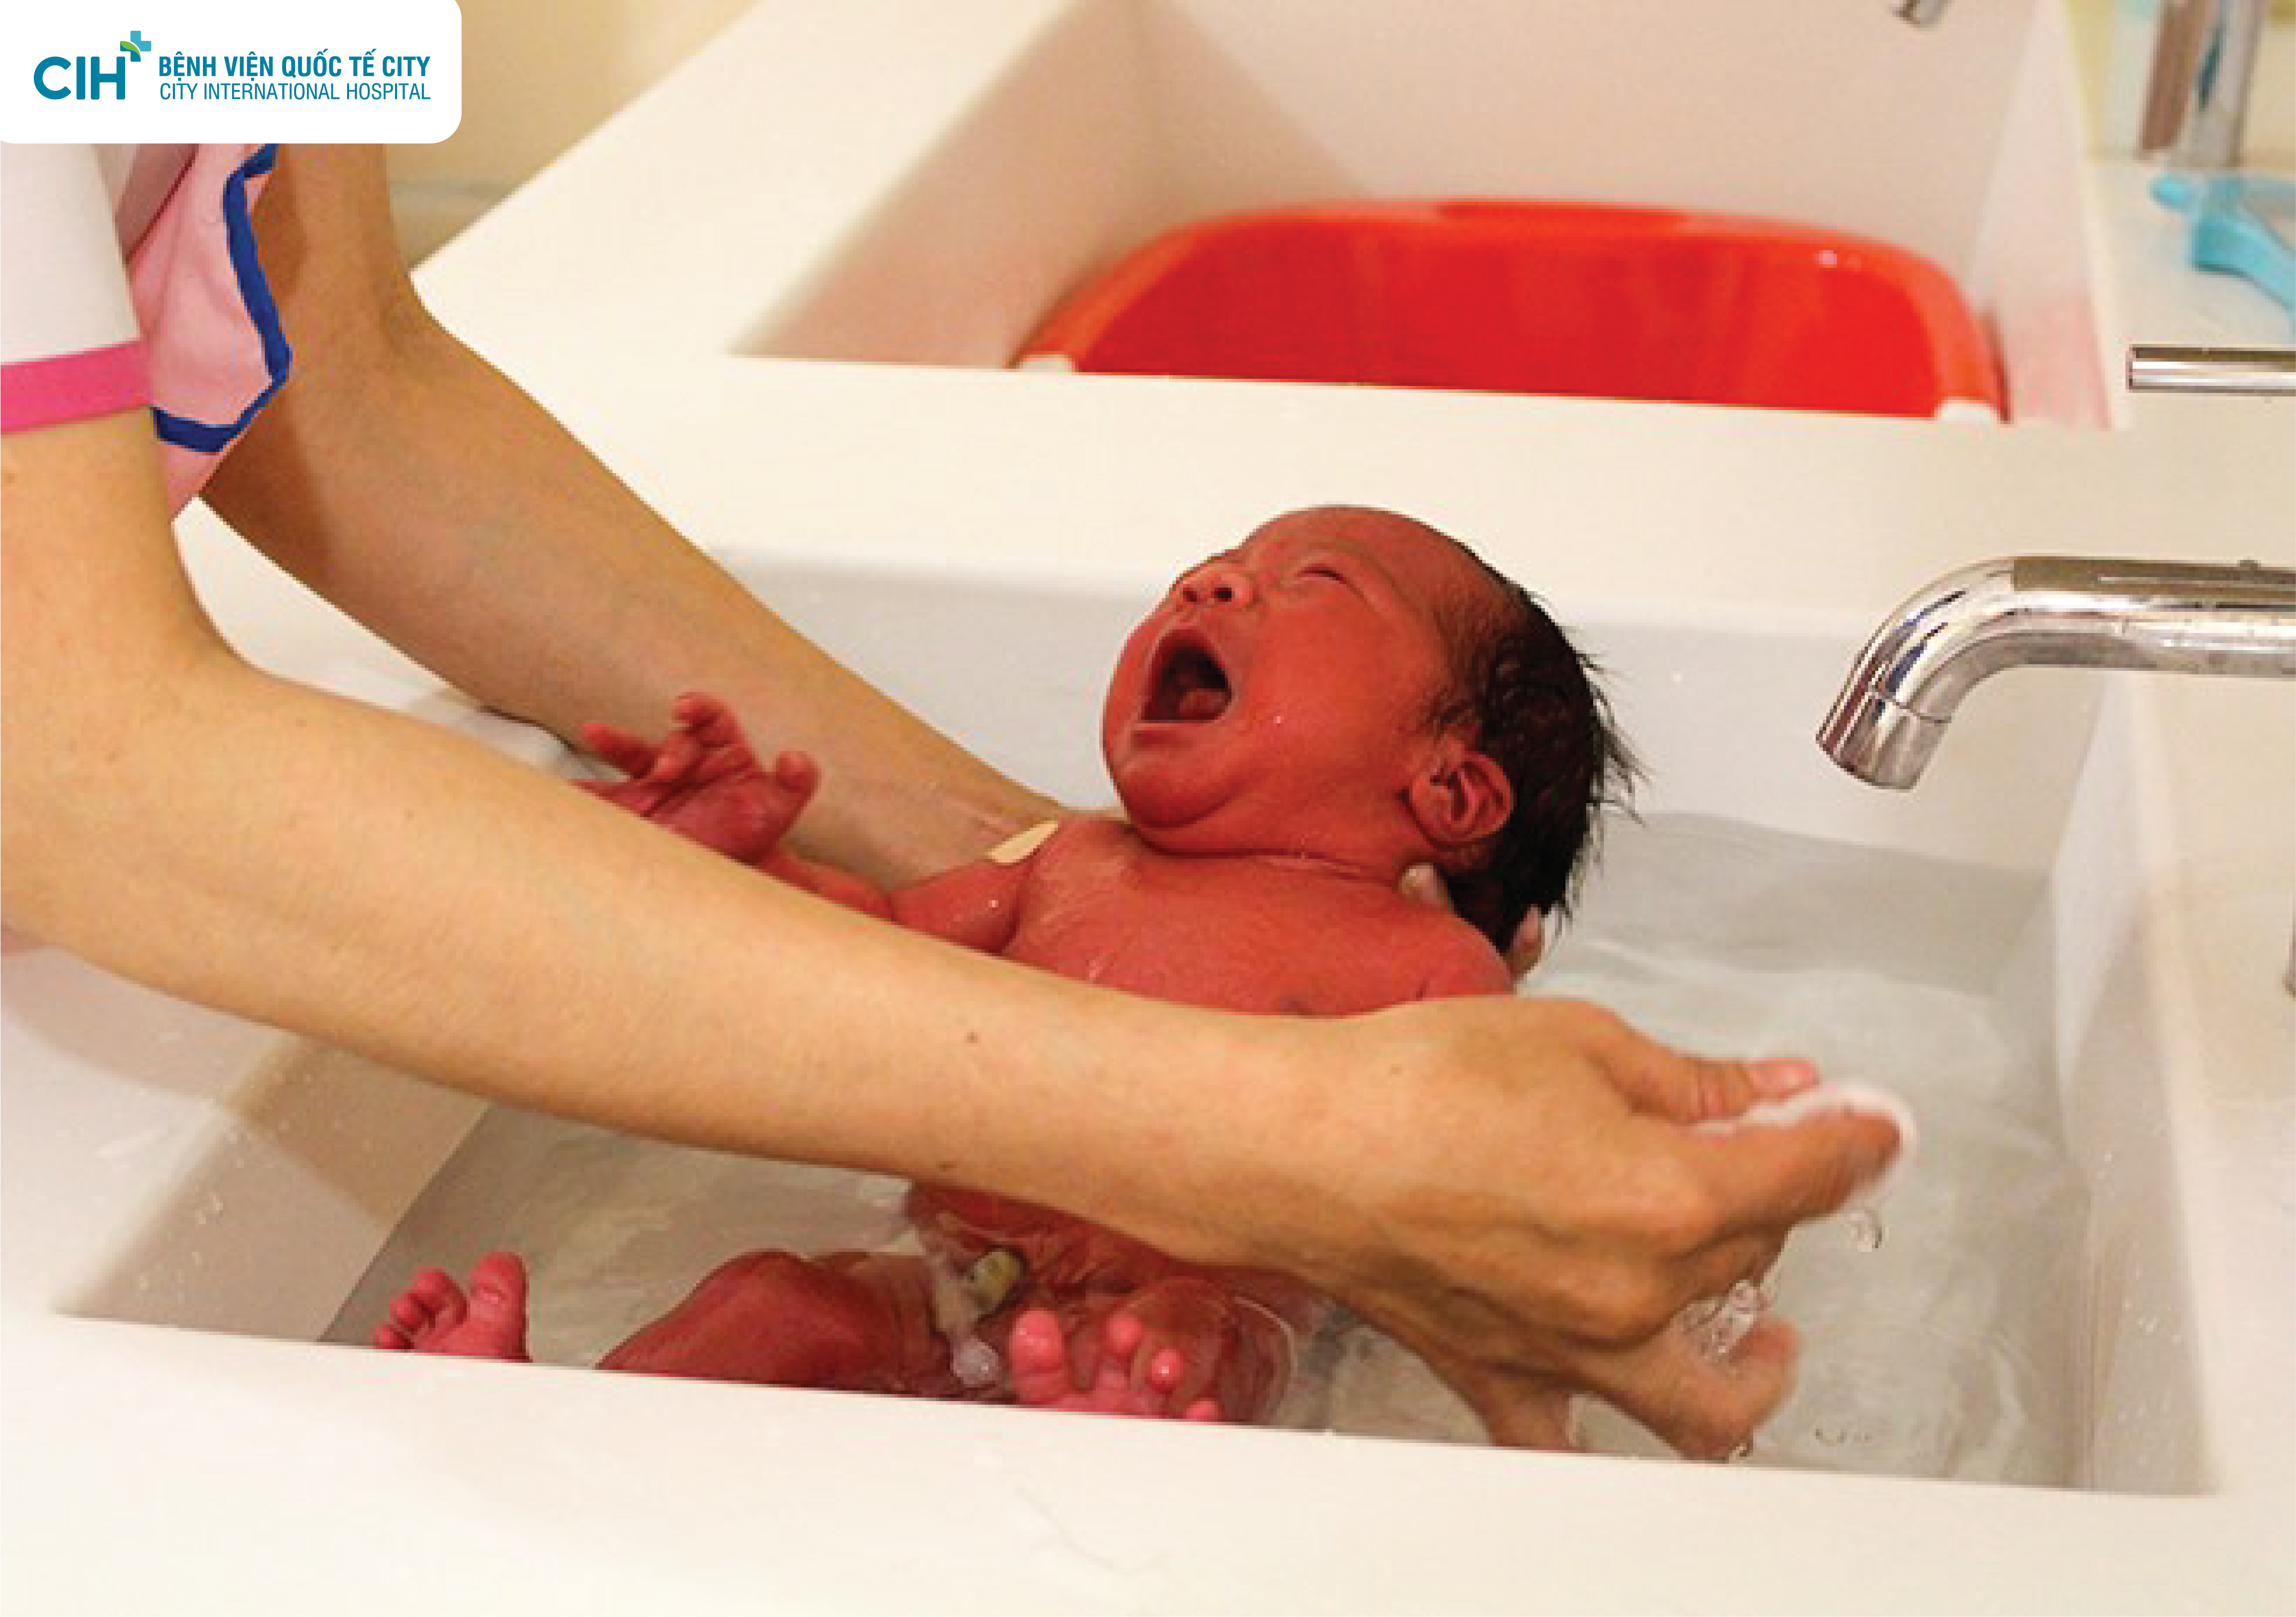 Khoảnh khắc đẹp của bé sơ sinh lần đầu tiên chạm nước